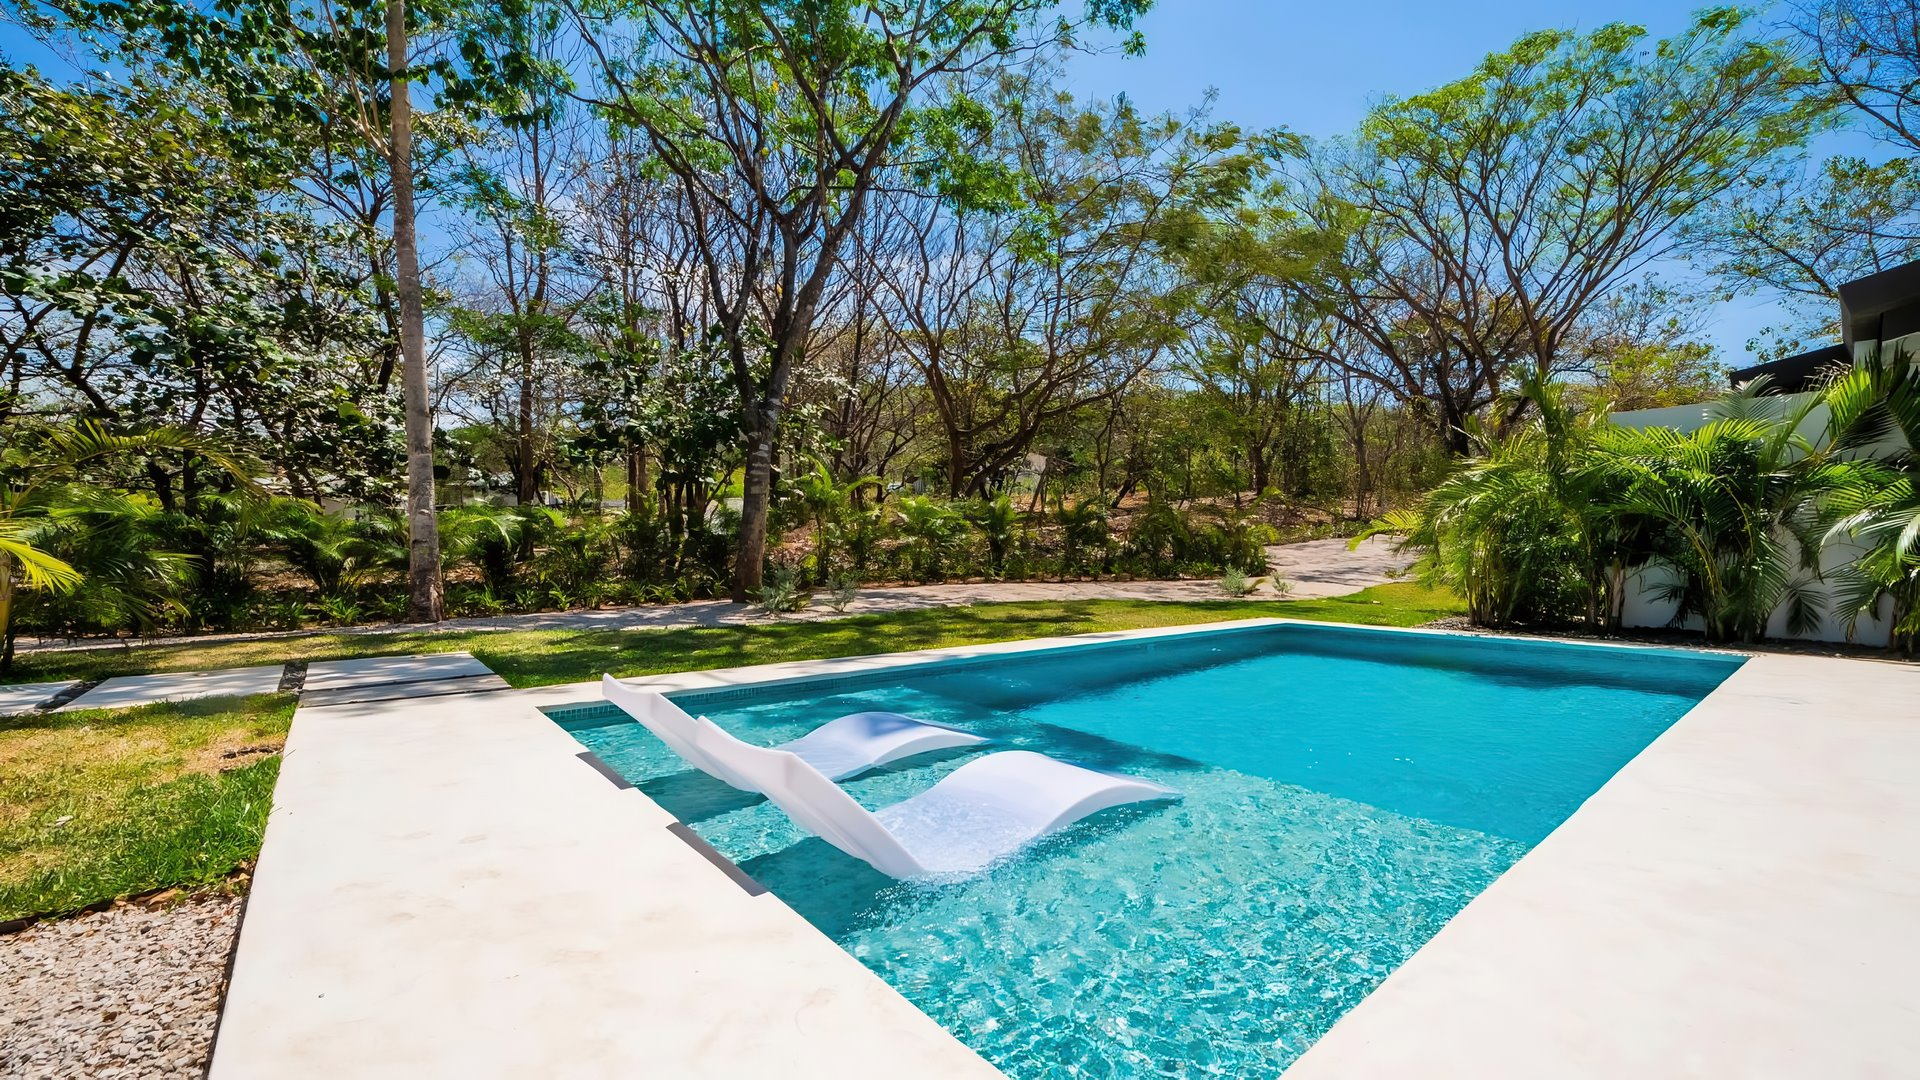 9932-La jolie piscine de la maison à 5 mn de Tamarindo au Costa Rica